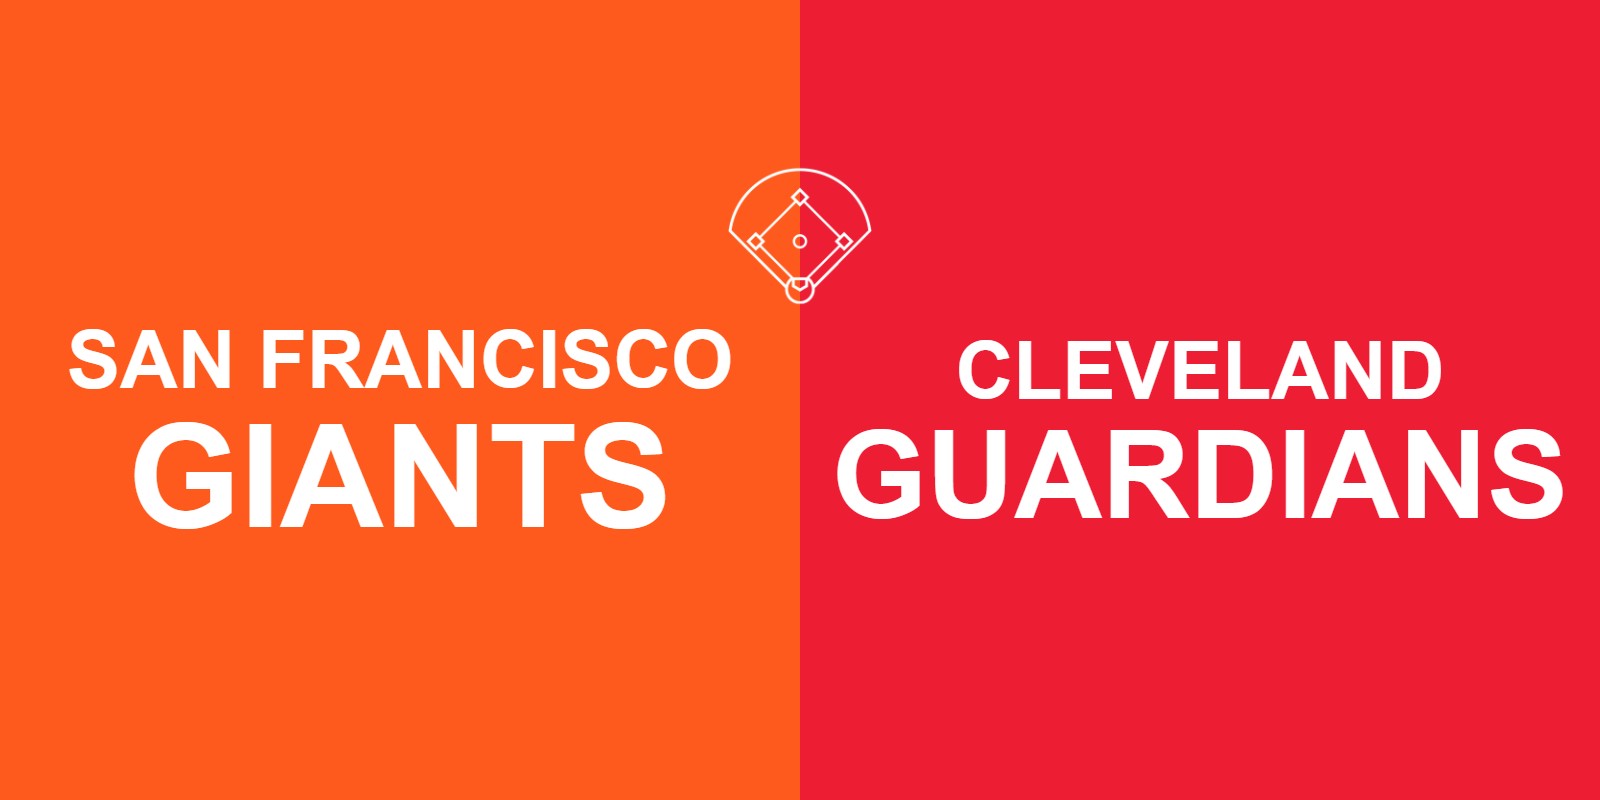 Giants vs Guardians